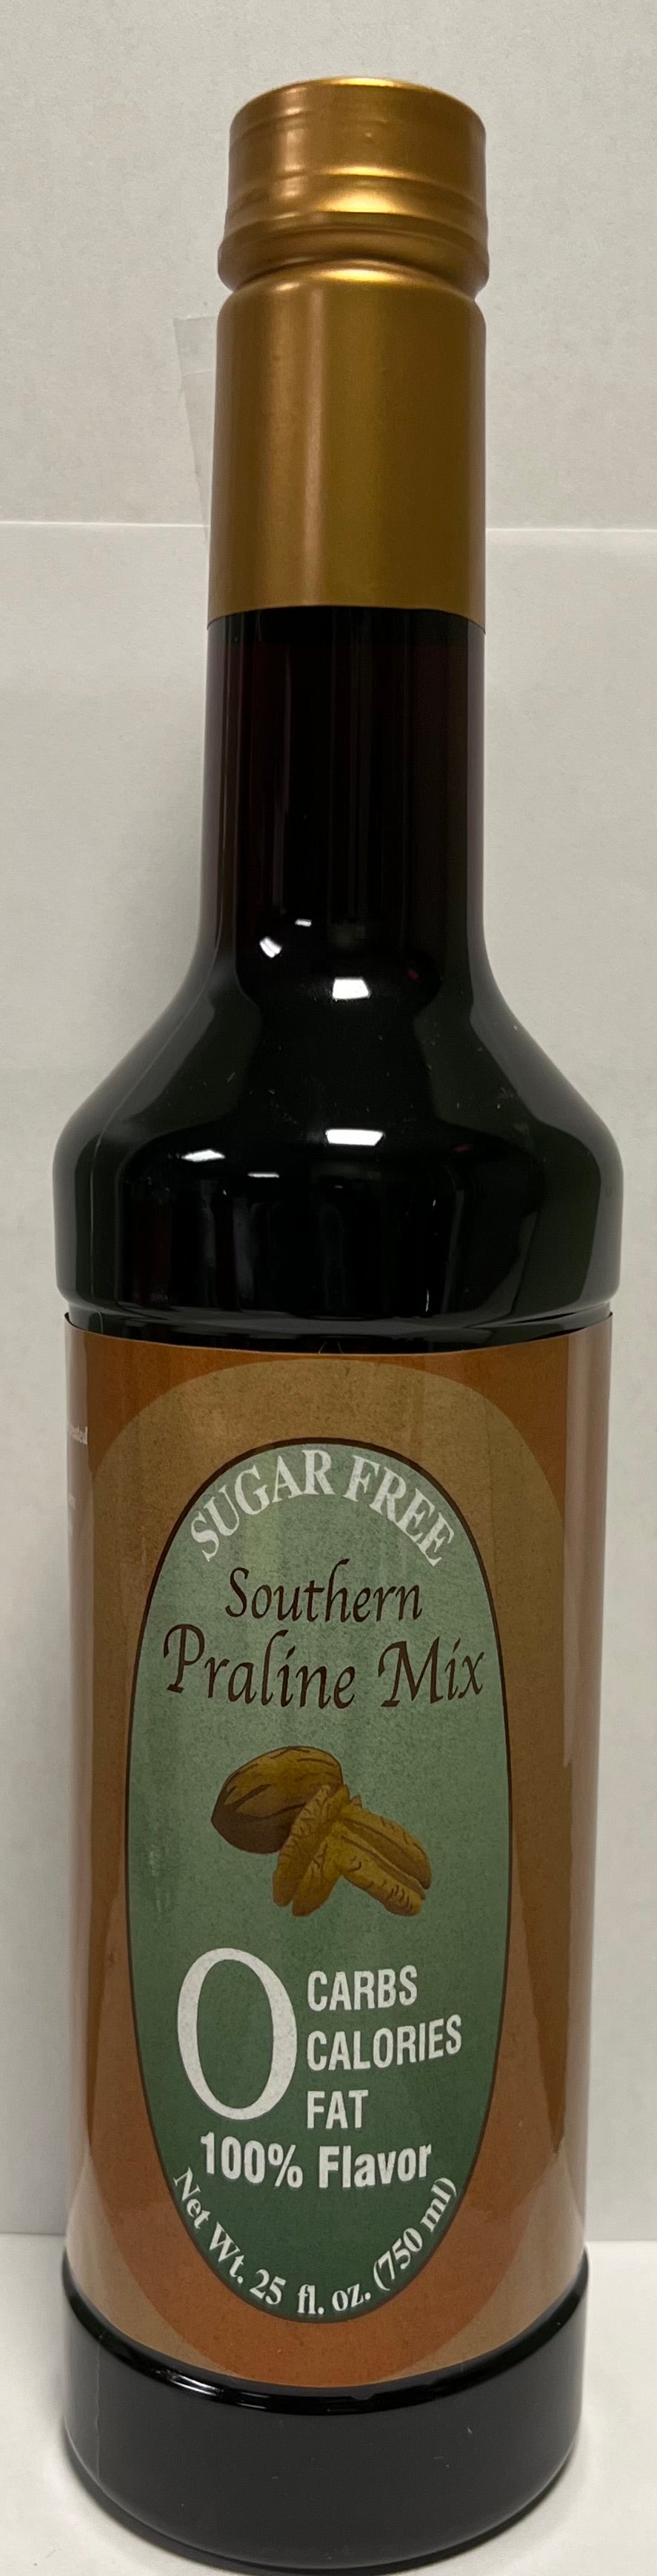 Sugar Free Savannah Praline Flavoring Mix